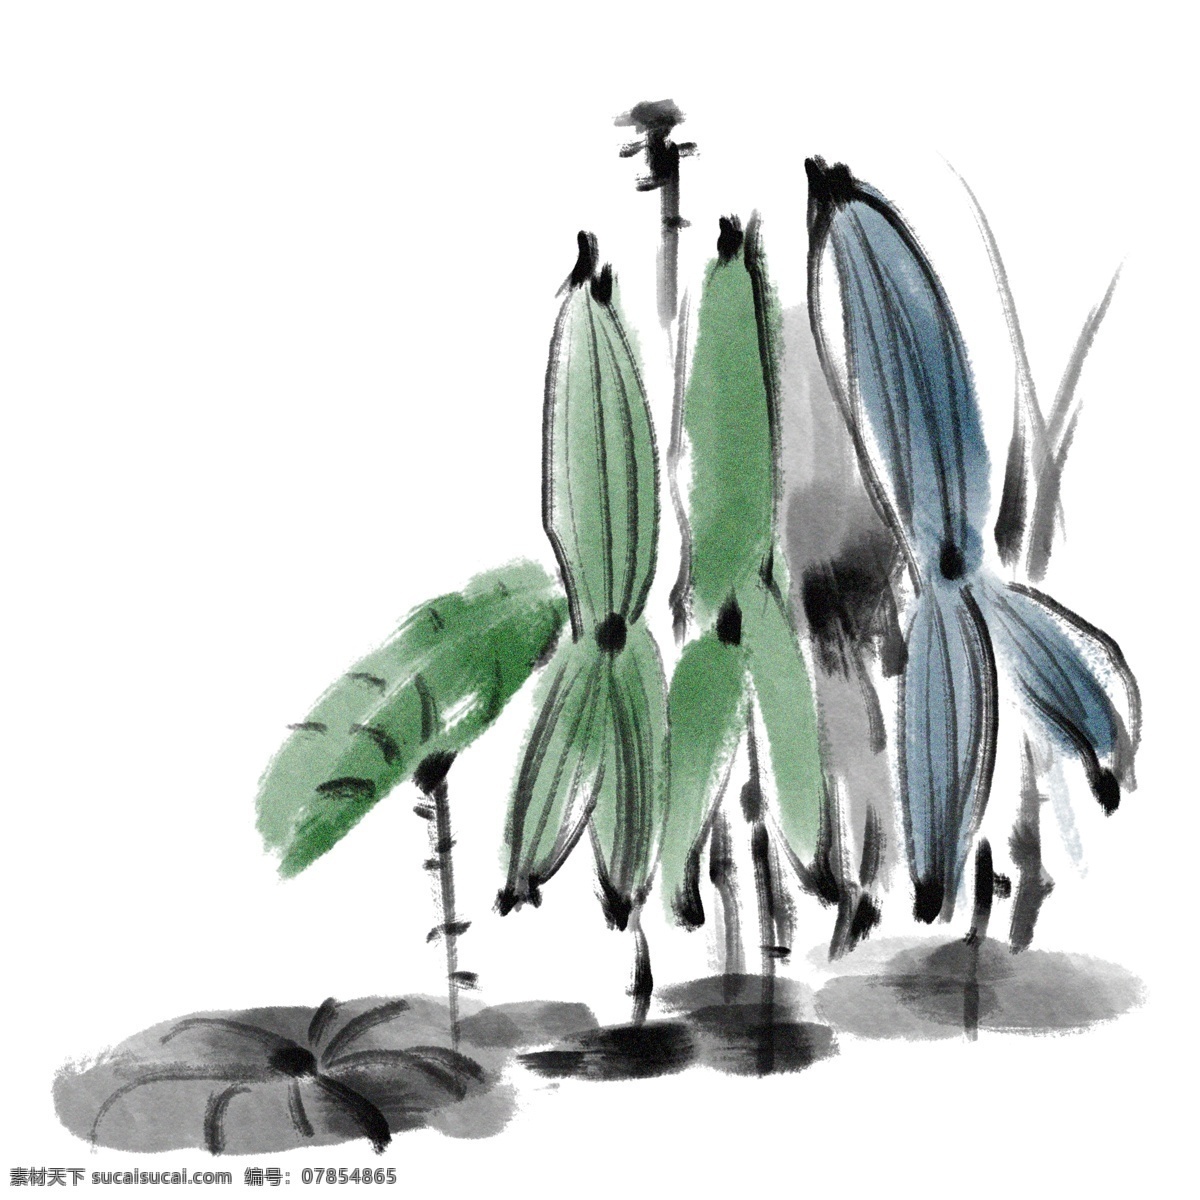 水墨 绿色 小 荷花 插画 绿色的荷叶 卡通插画 水墨插画 水墨植物 植物插画 花朵插画 水墨小荷花